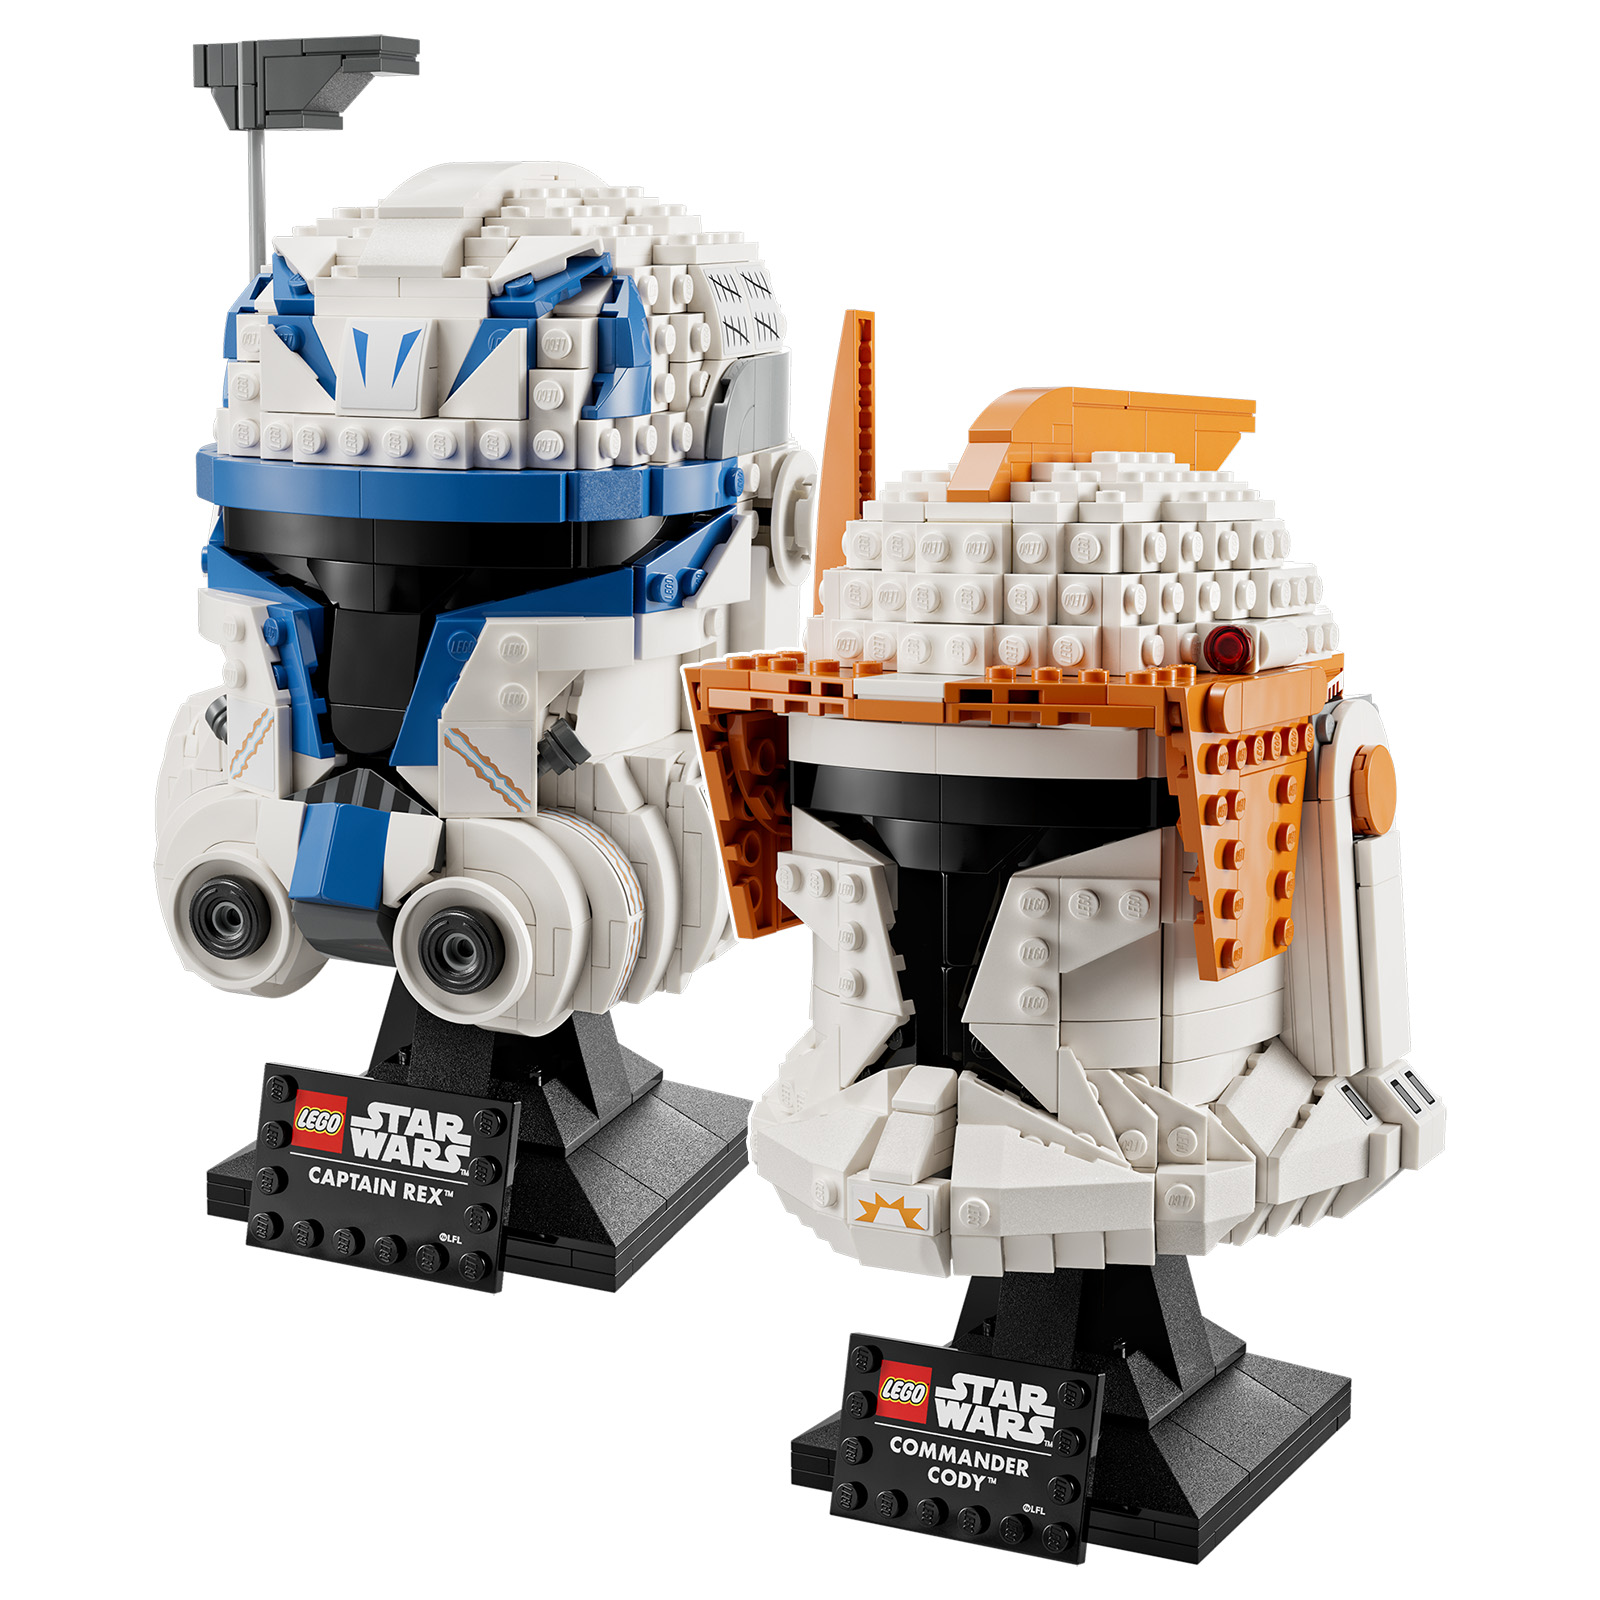 ახალი LEGO Star Wars 2023 ჩაფხუტი: 75349 კაპიტანი რექსი და 75350 კლონი მეთაური კოდი